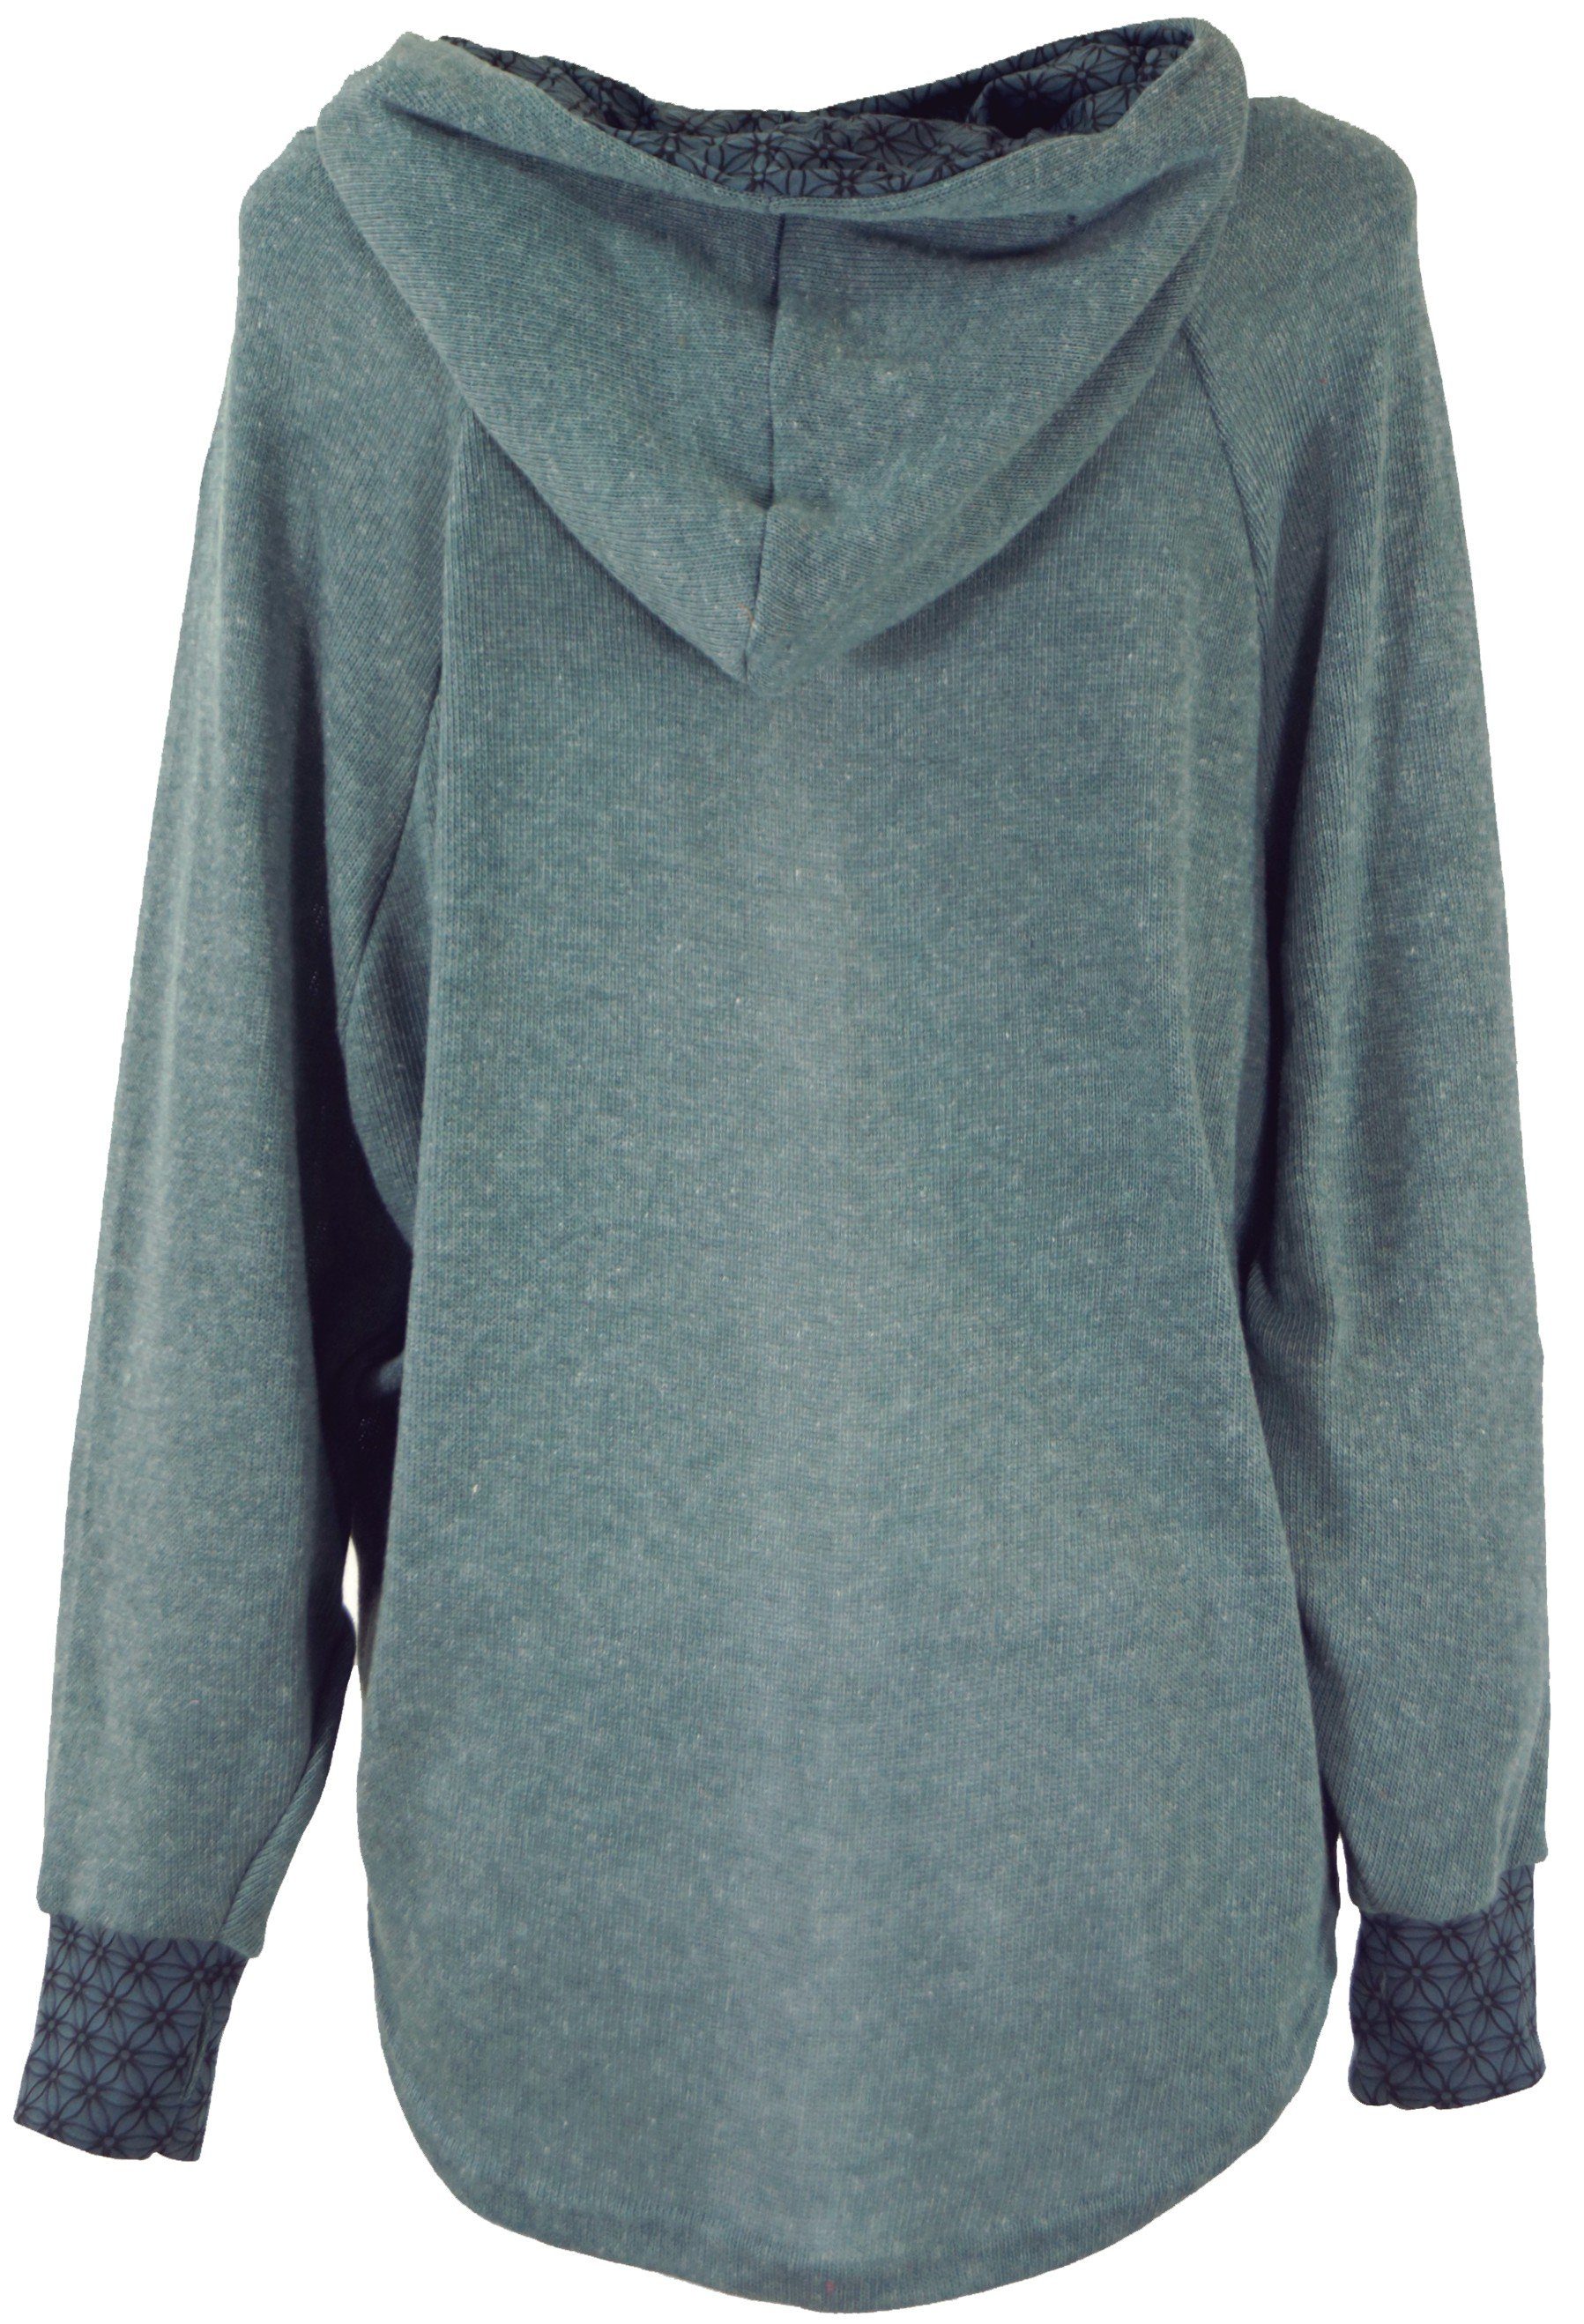 Sweatshirt, Pullover, Longsleeve alternative -.. taubenblau Bekleidung Hoody, Kapuzenpullover Guru-Shop